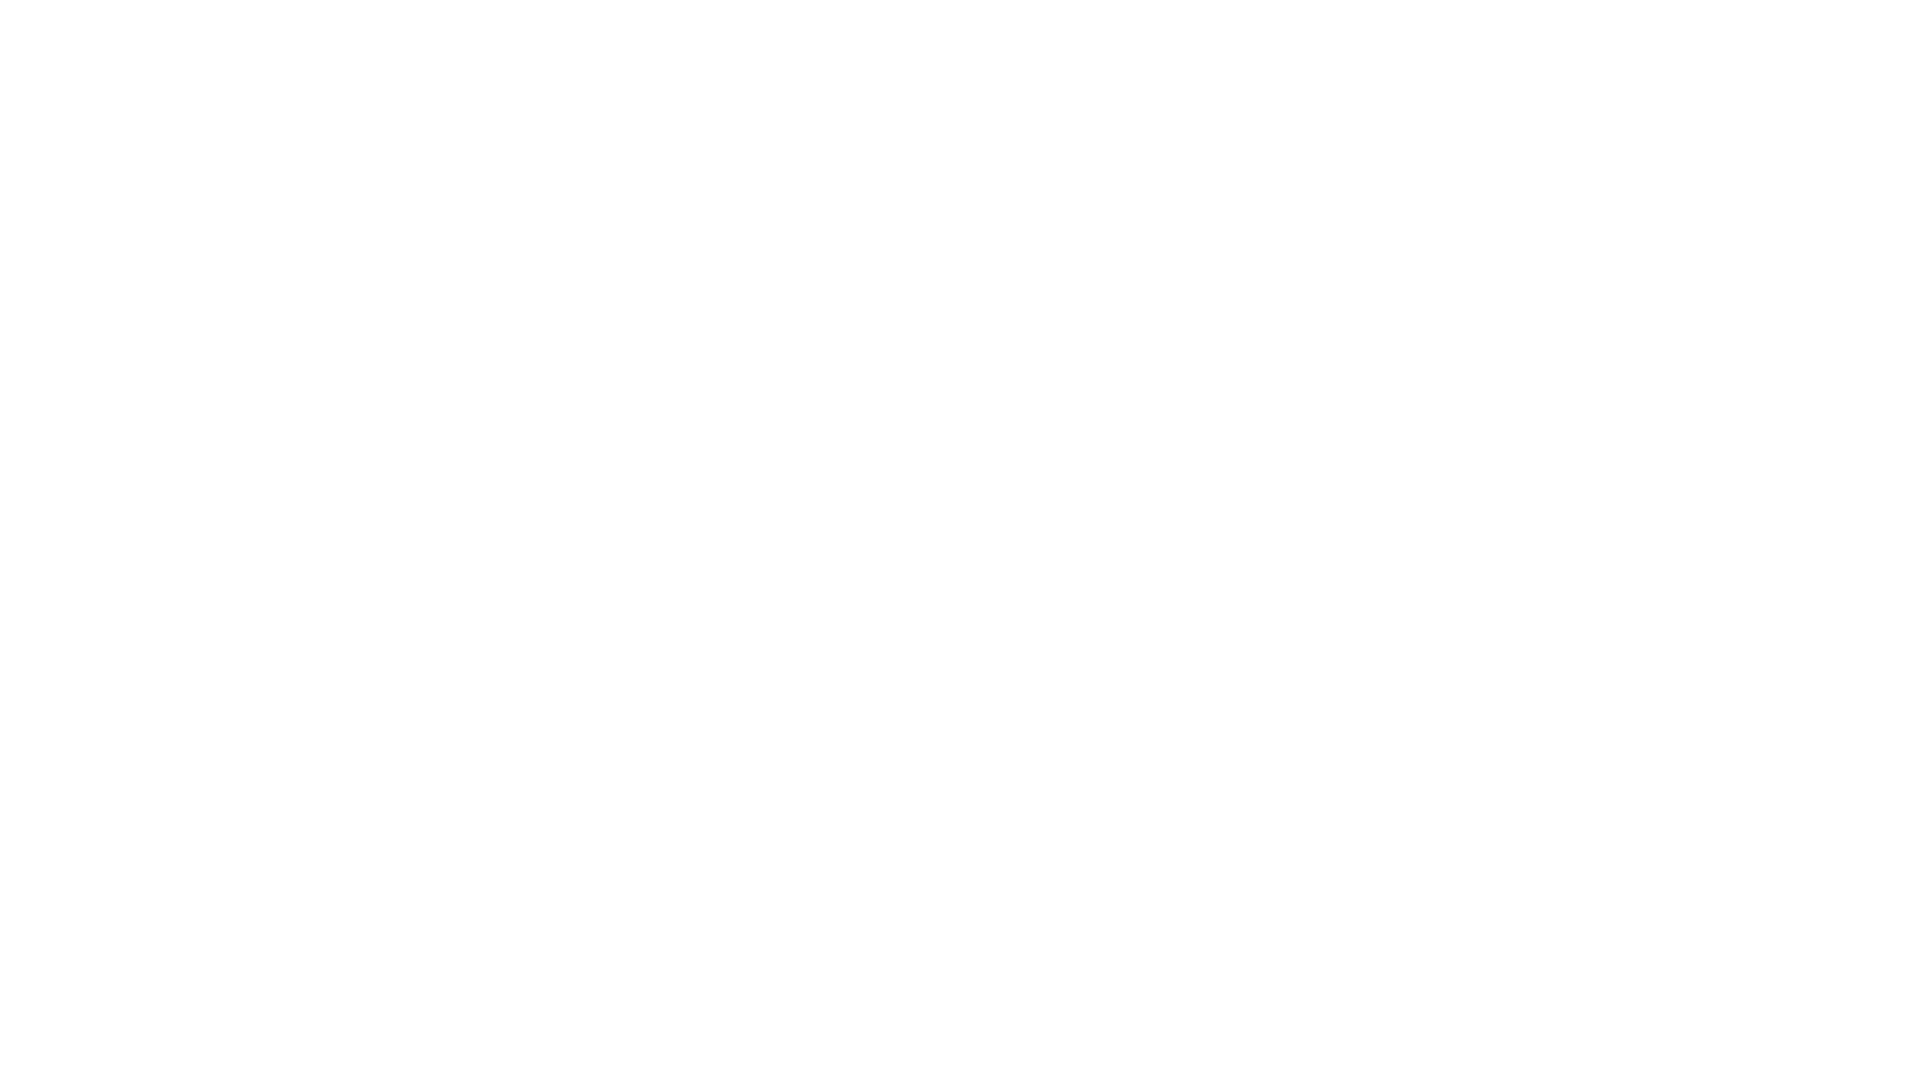 Moovbuddy